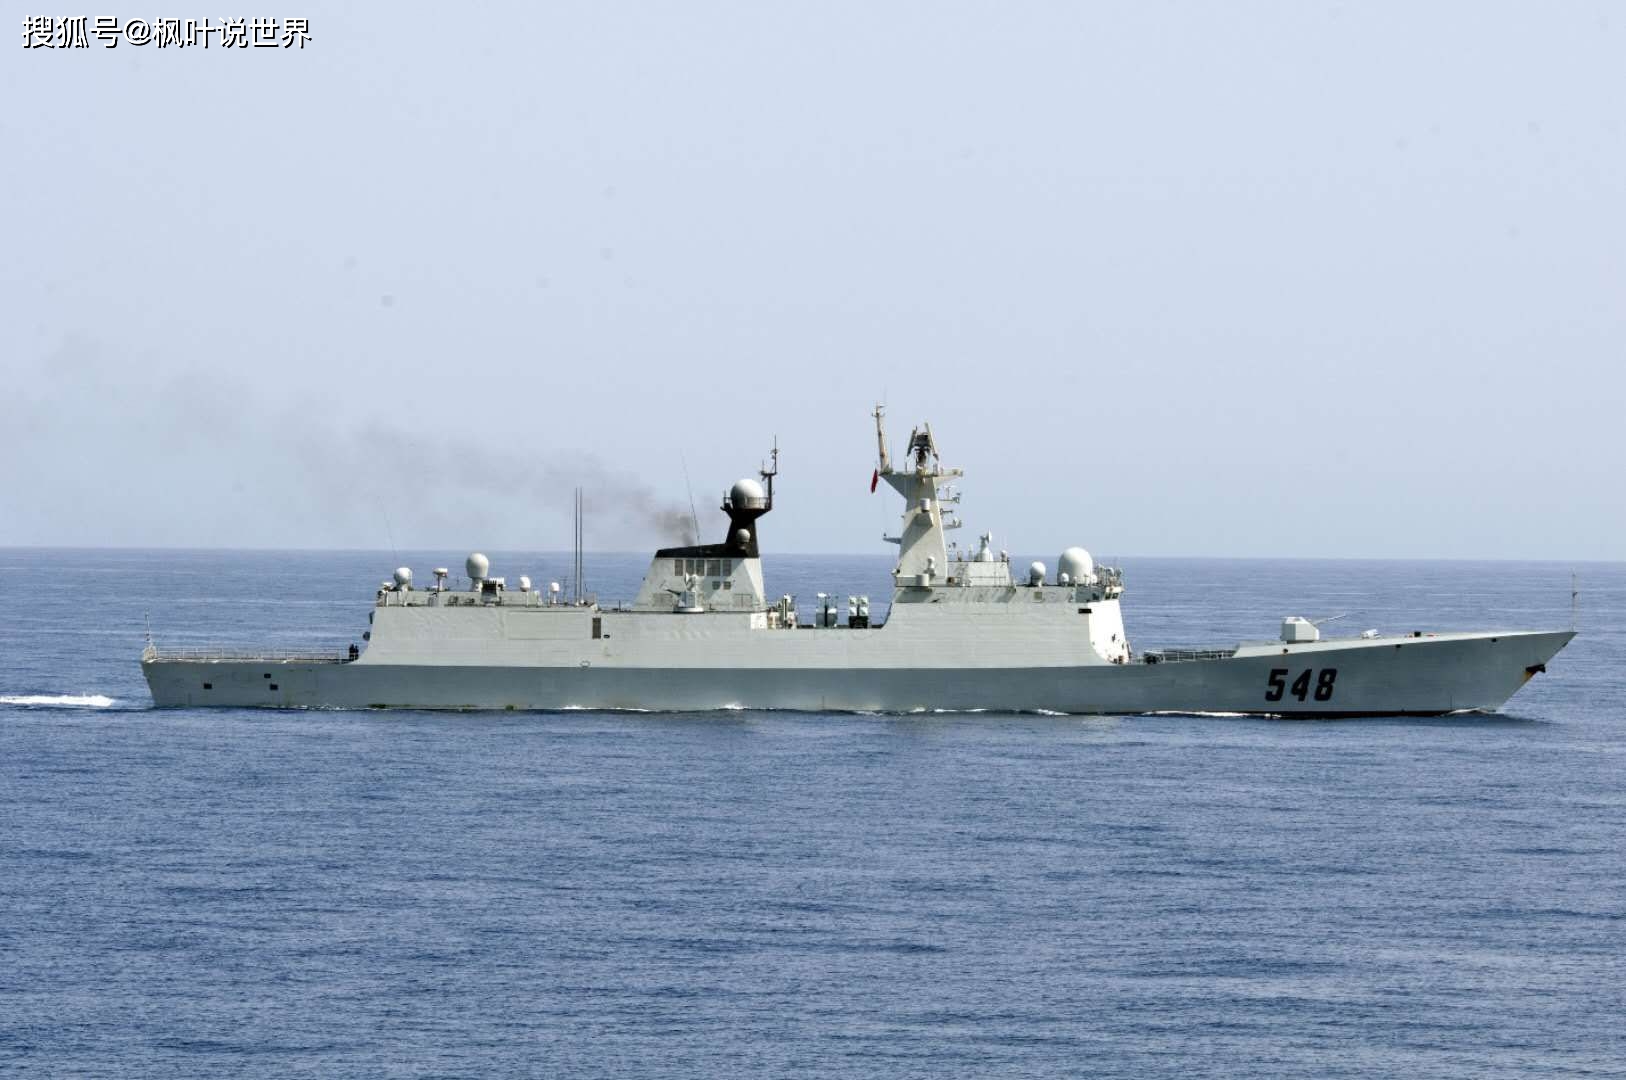 原创中国054a p型护卫舰:巴基斯坦海军未来的主力战舰